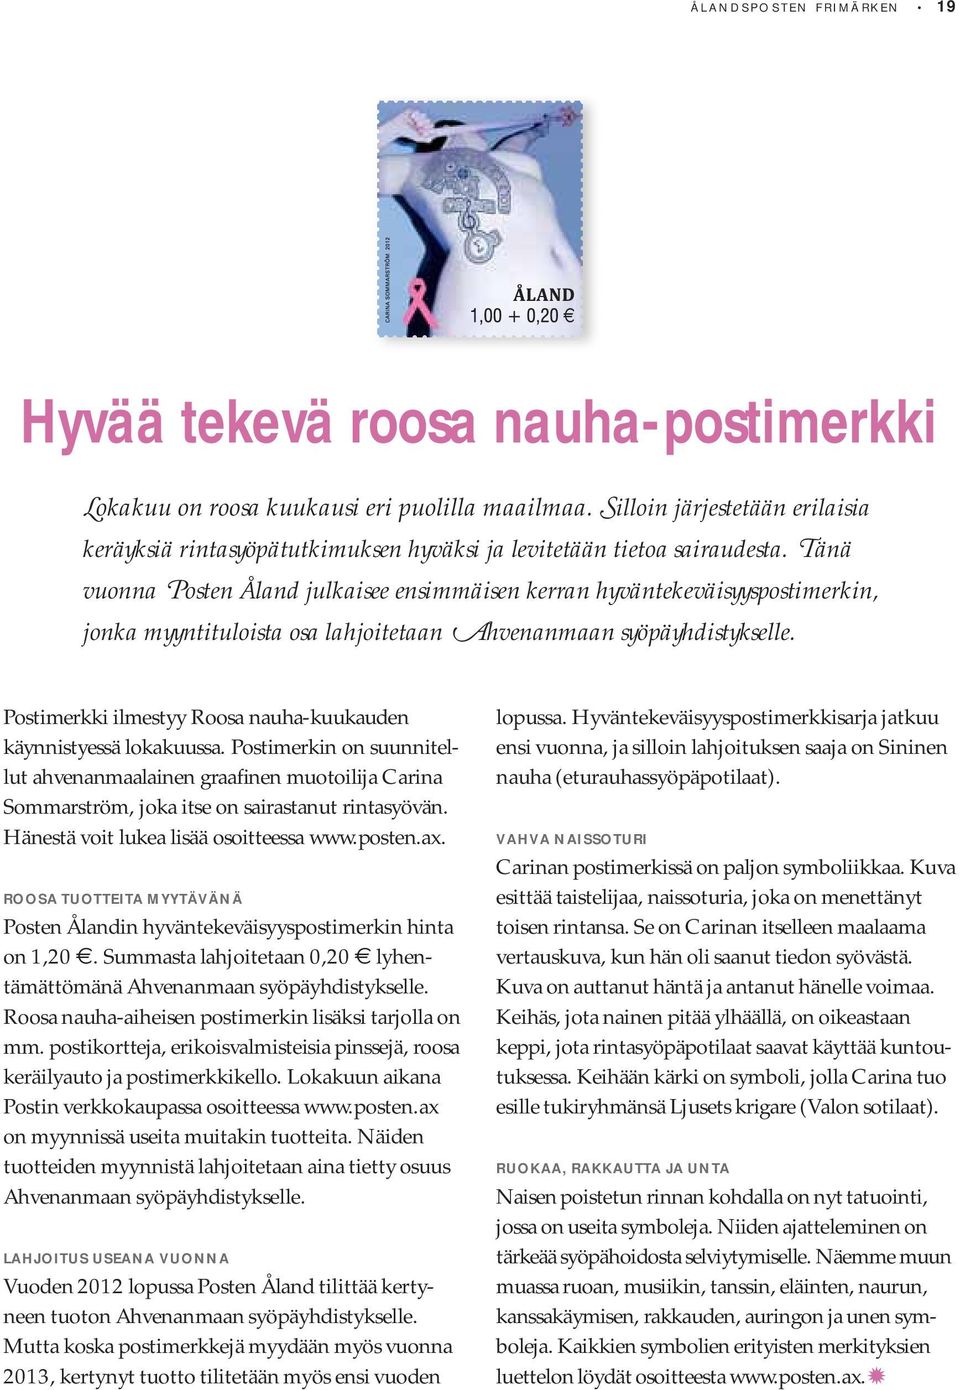 Tänä vuonna Posten Åland julkaisee ensimmäisen kerran hyväntekeväisyyspostimerkin, jonka myyntituloista osa lahjoitetaan Ahvenanmaan syöpäyhdistykselle.